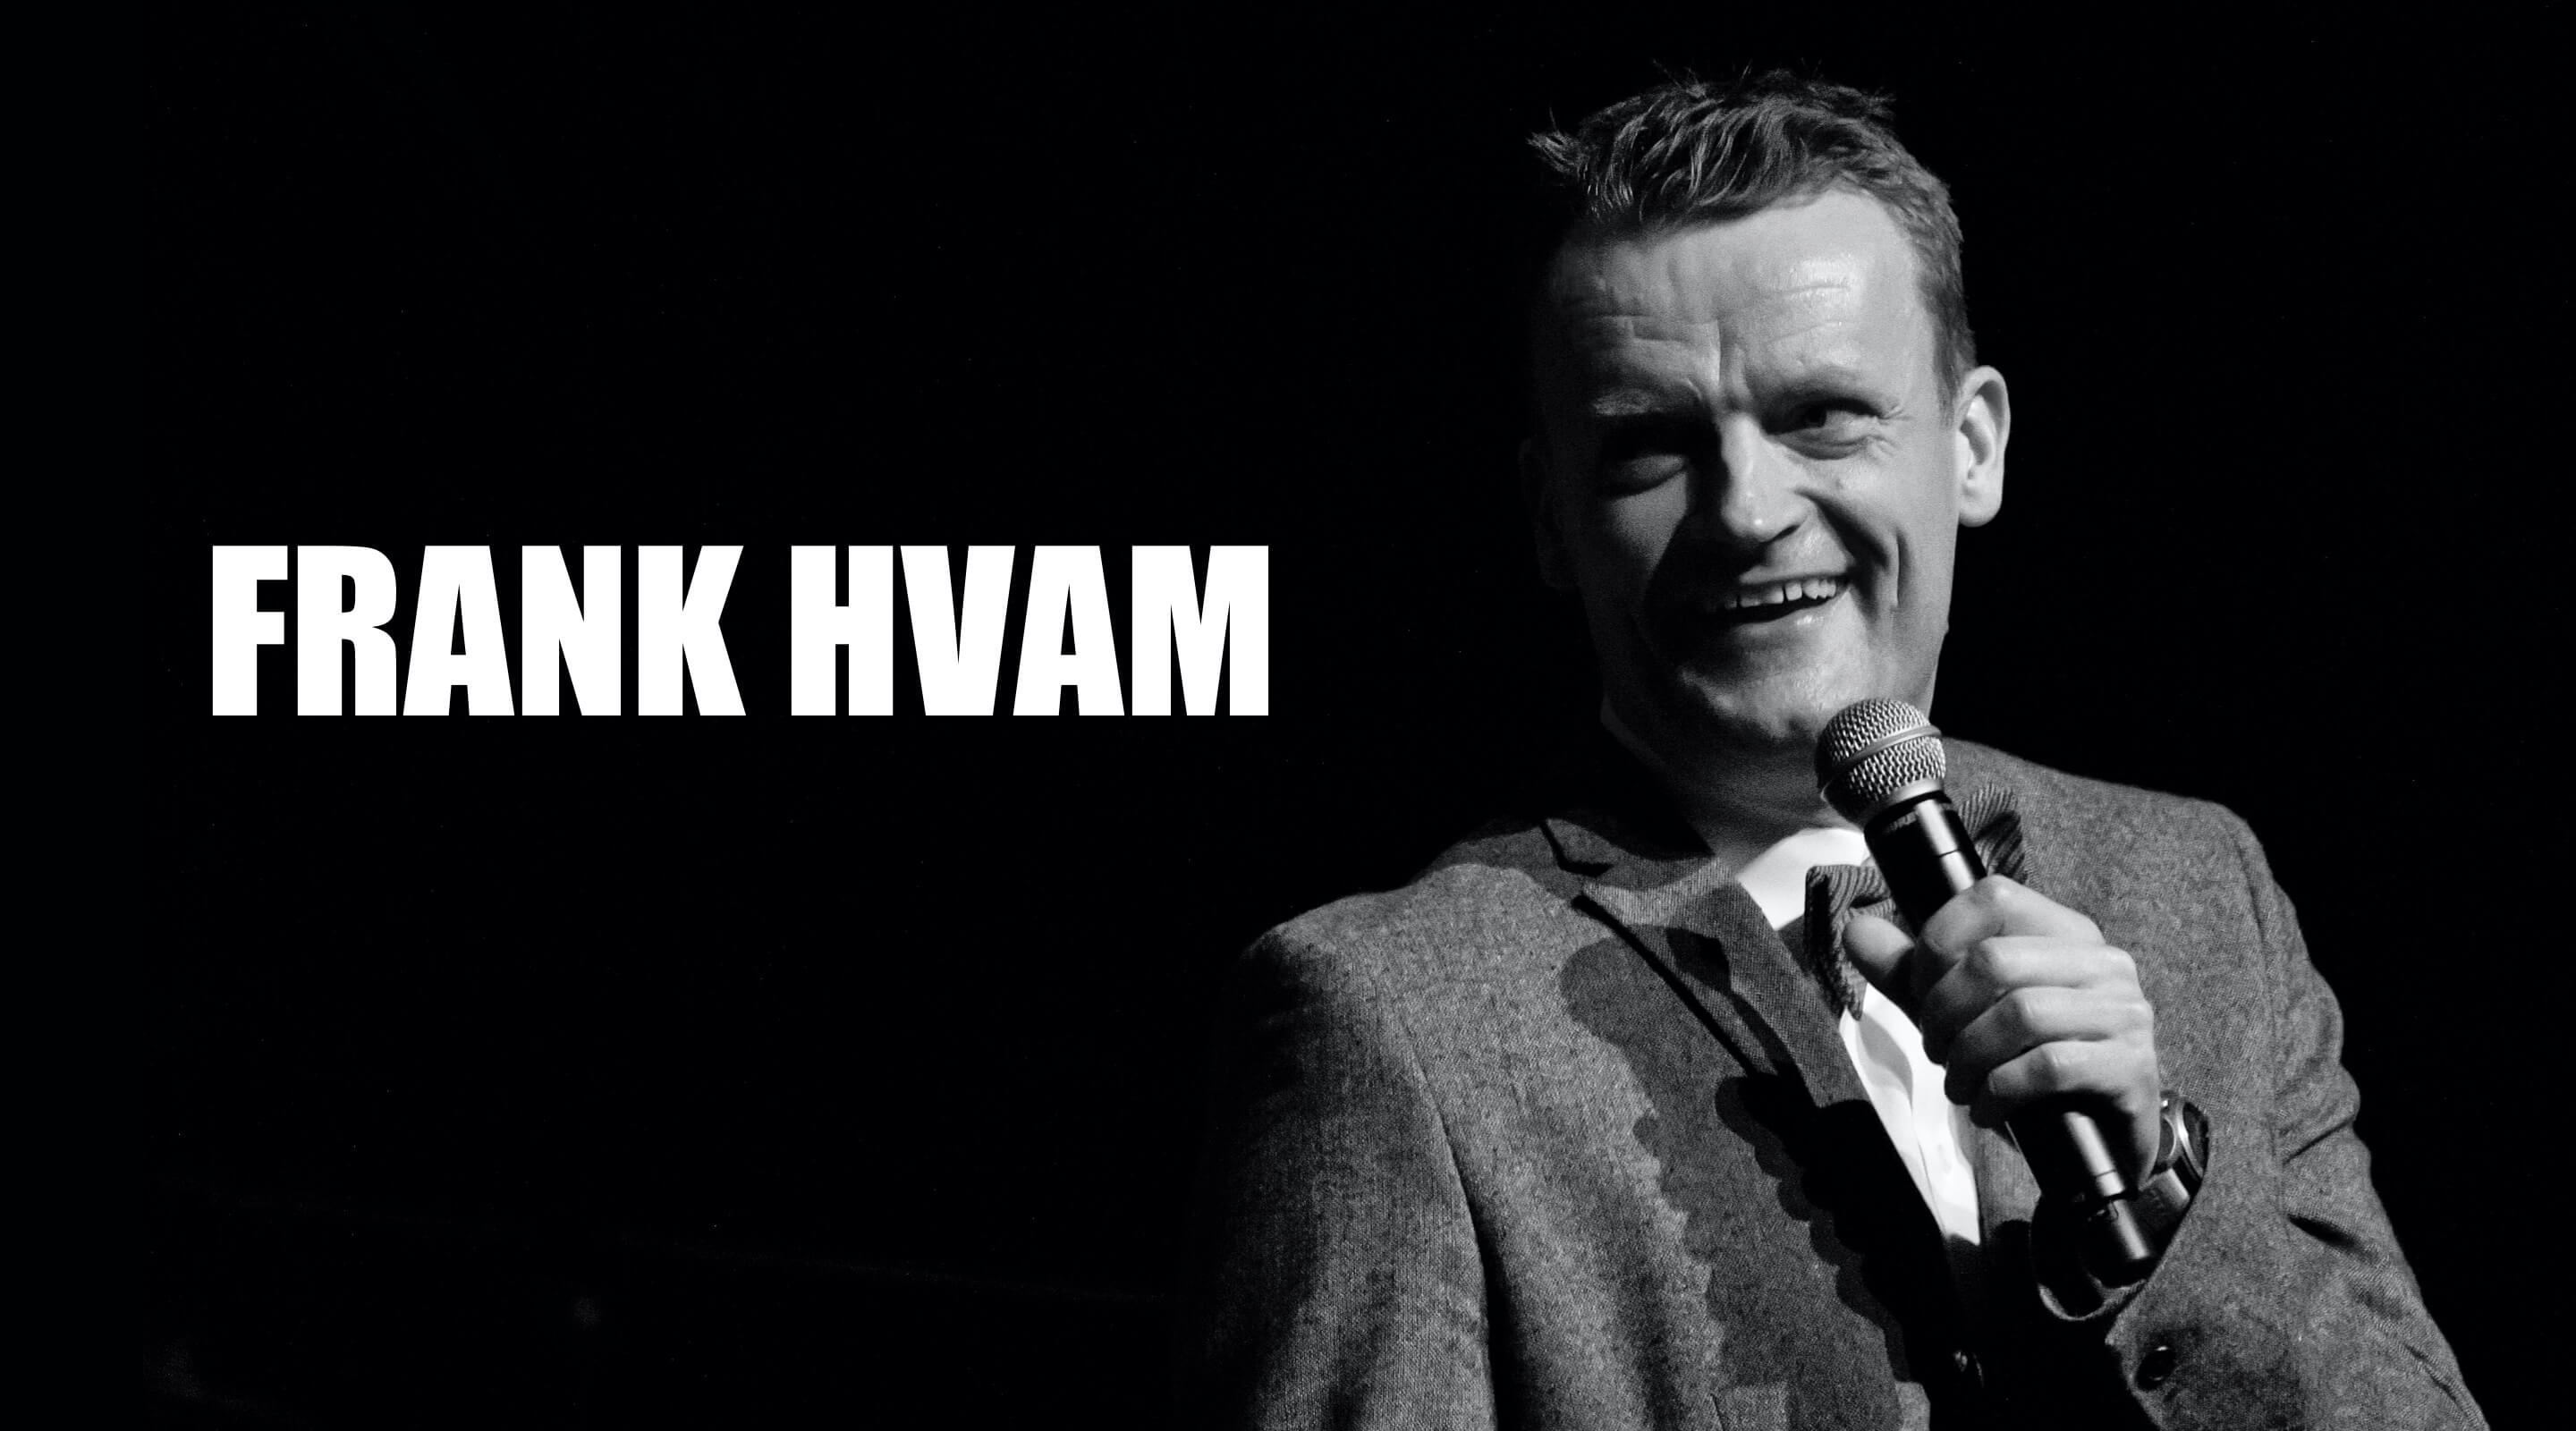 Frank Hvam